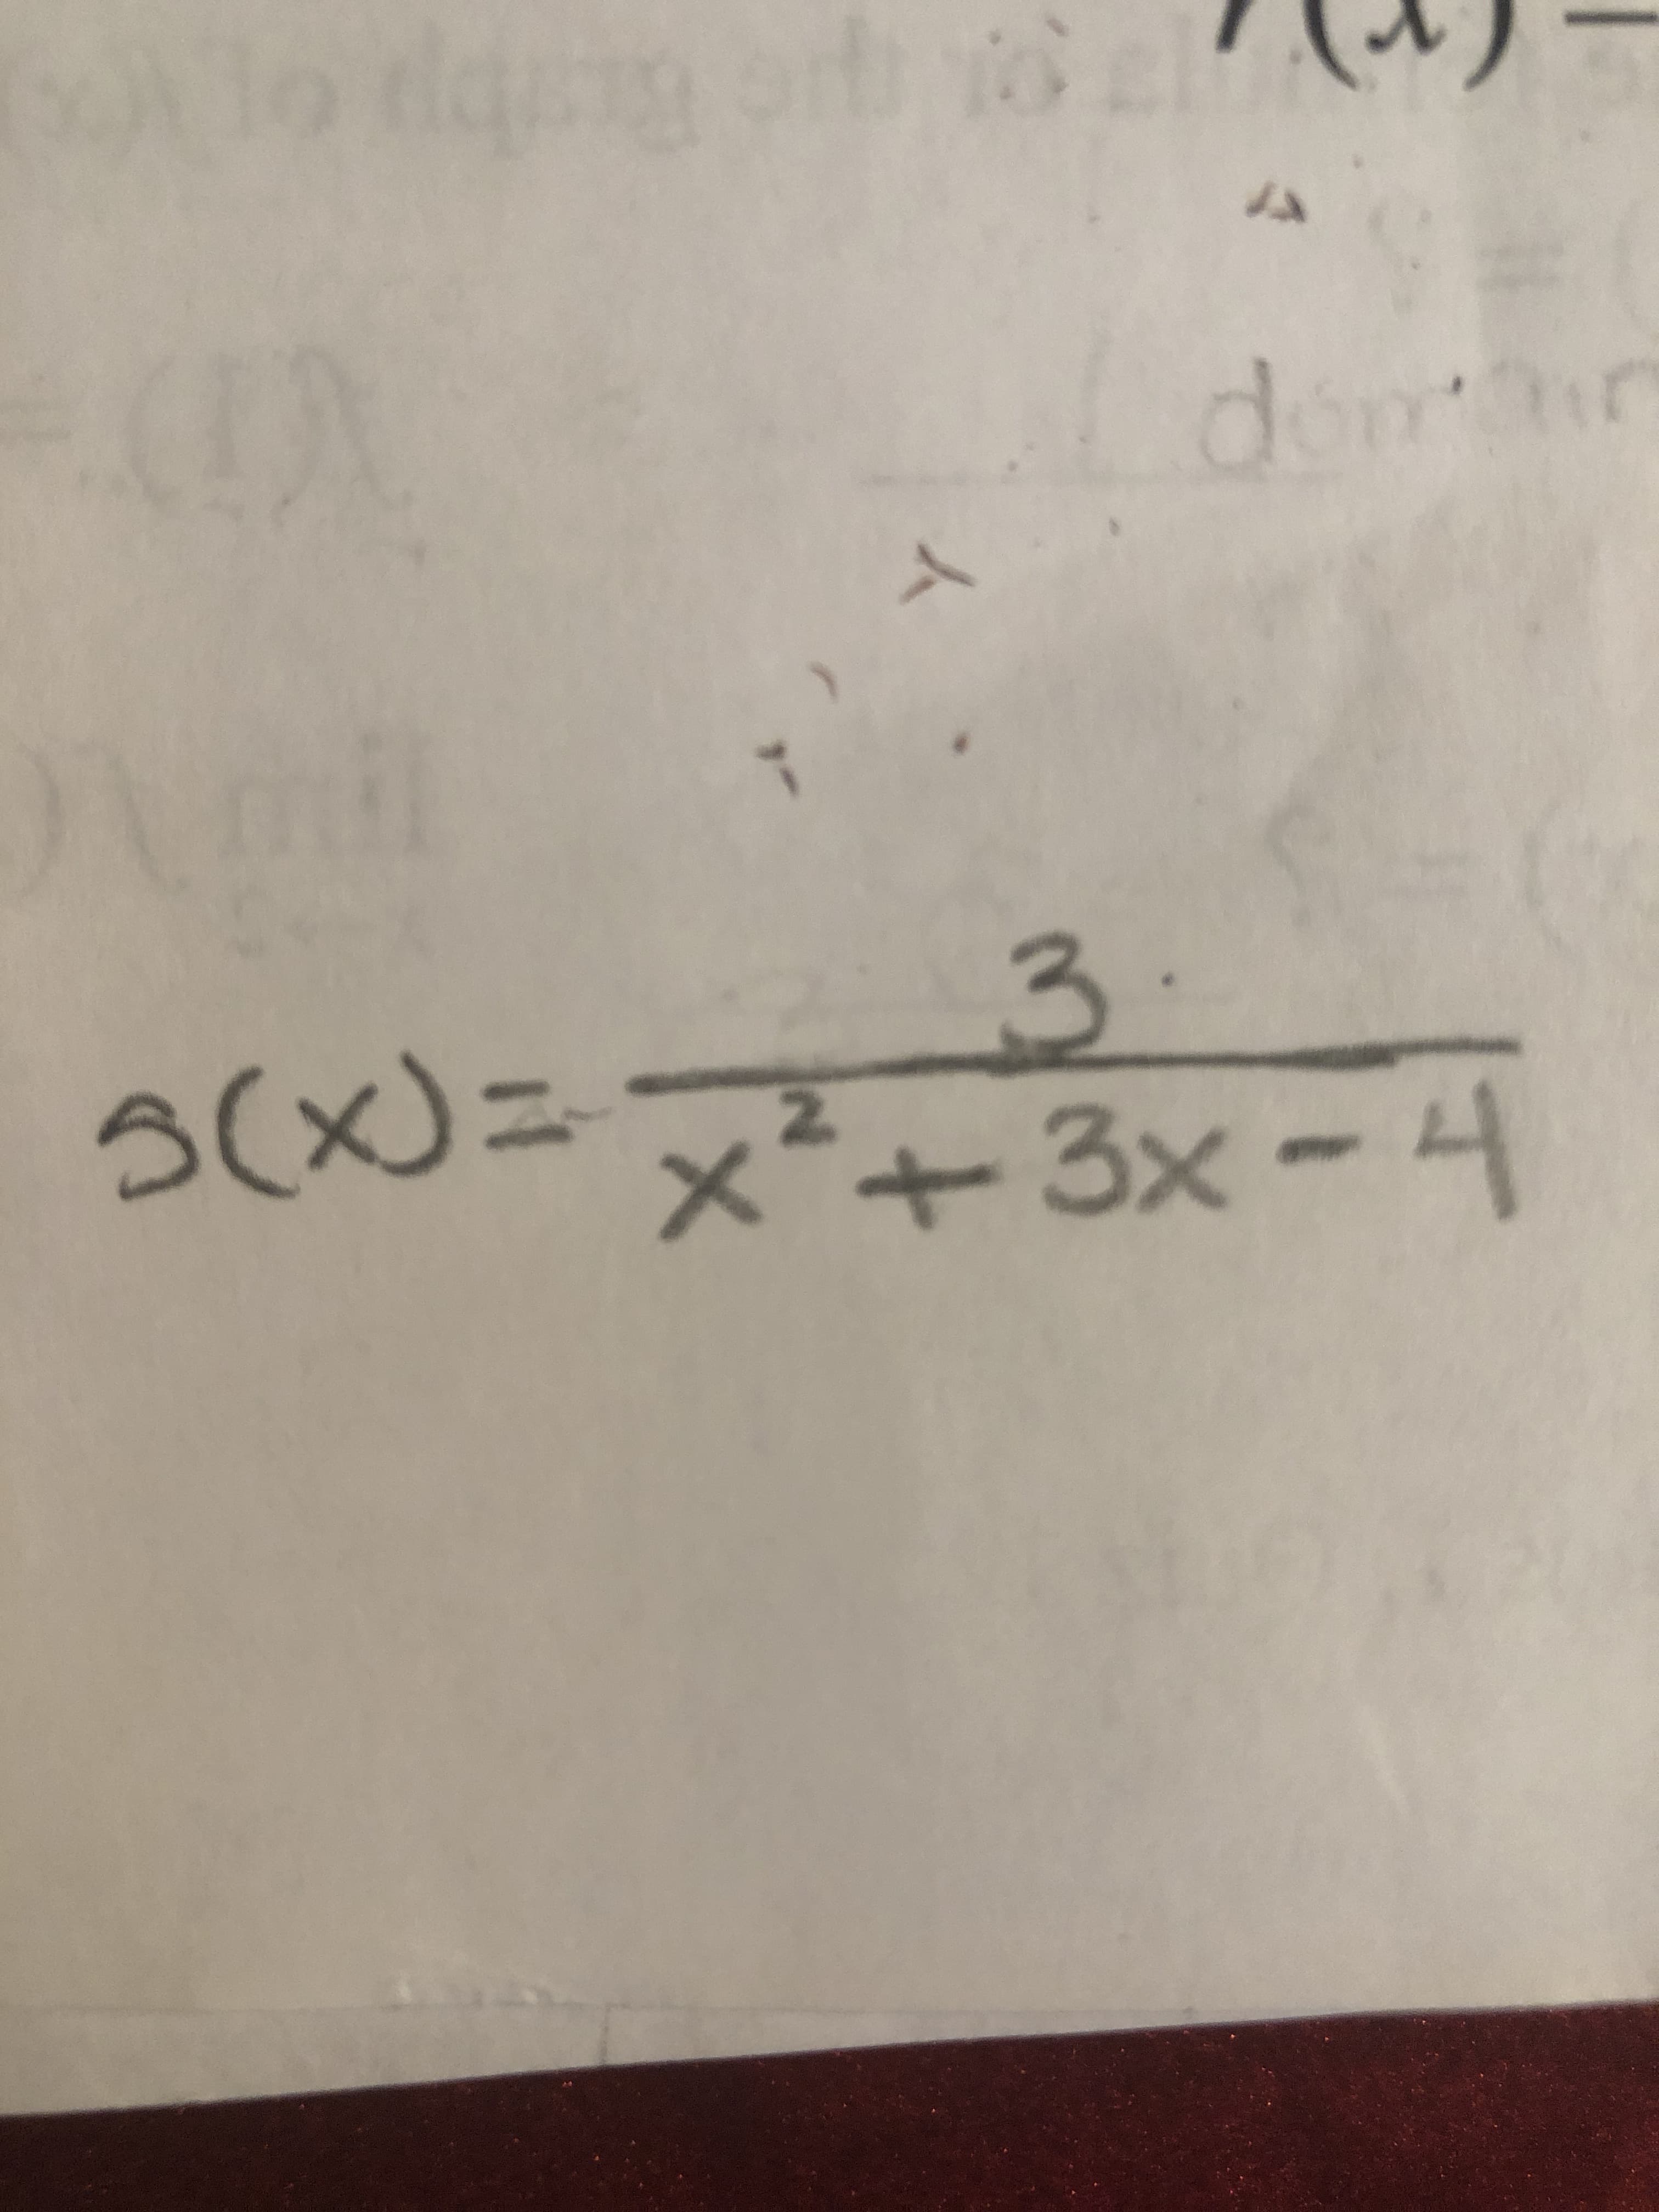 人
3.
x²+3x -4
3(x)%=D
